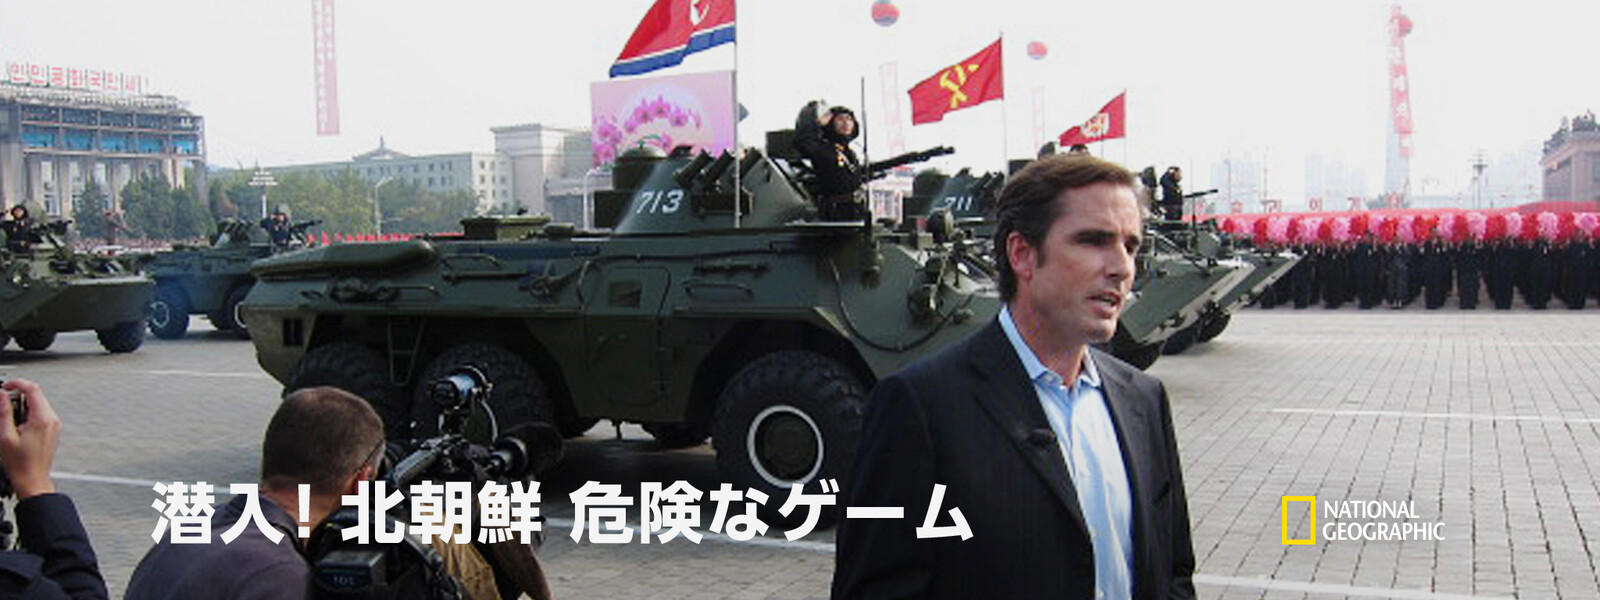 潜入! 北朝鮮：危険なゲームの動画 - 潜入! 北朝鮮：3代の独裁王朝